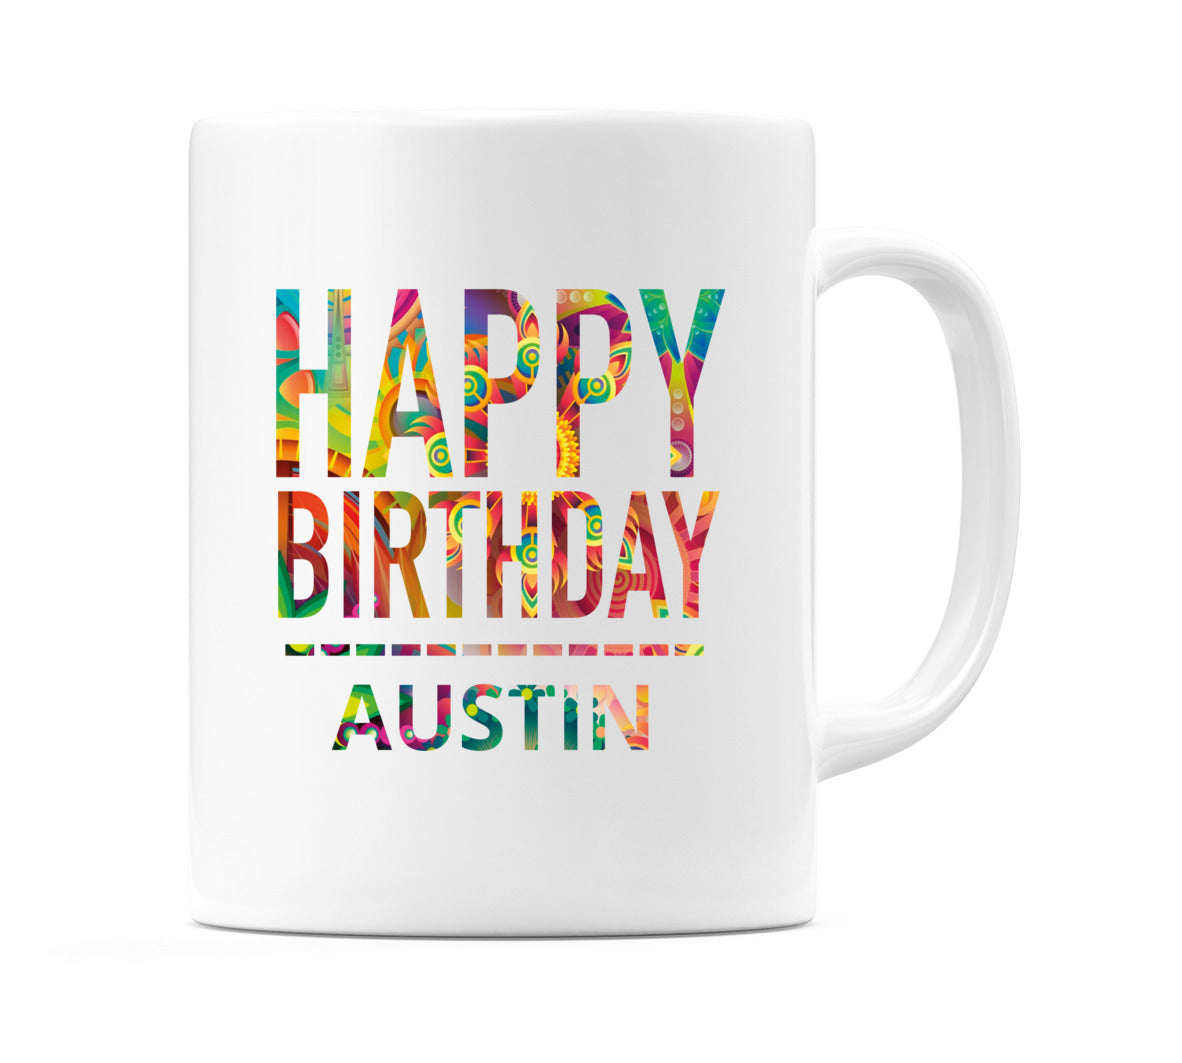 Happy Birthday Austin (Tie Dye Effect) Mug Cup by WeDoMugs